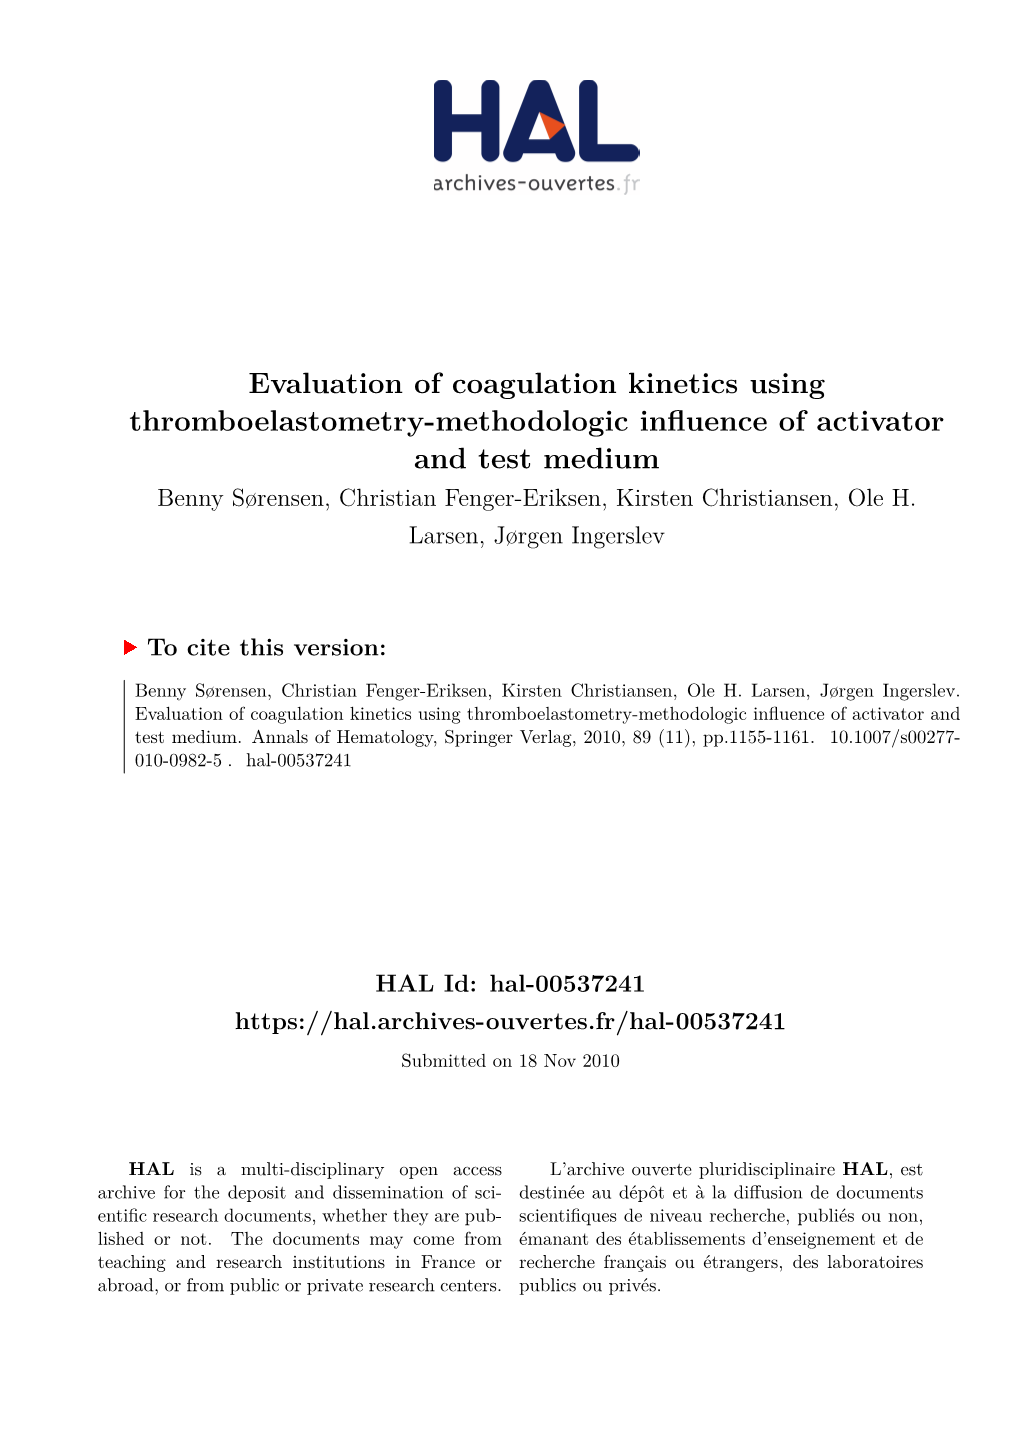 Evaluation of Coagulation Kinetics Using Thromboelastometry